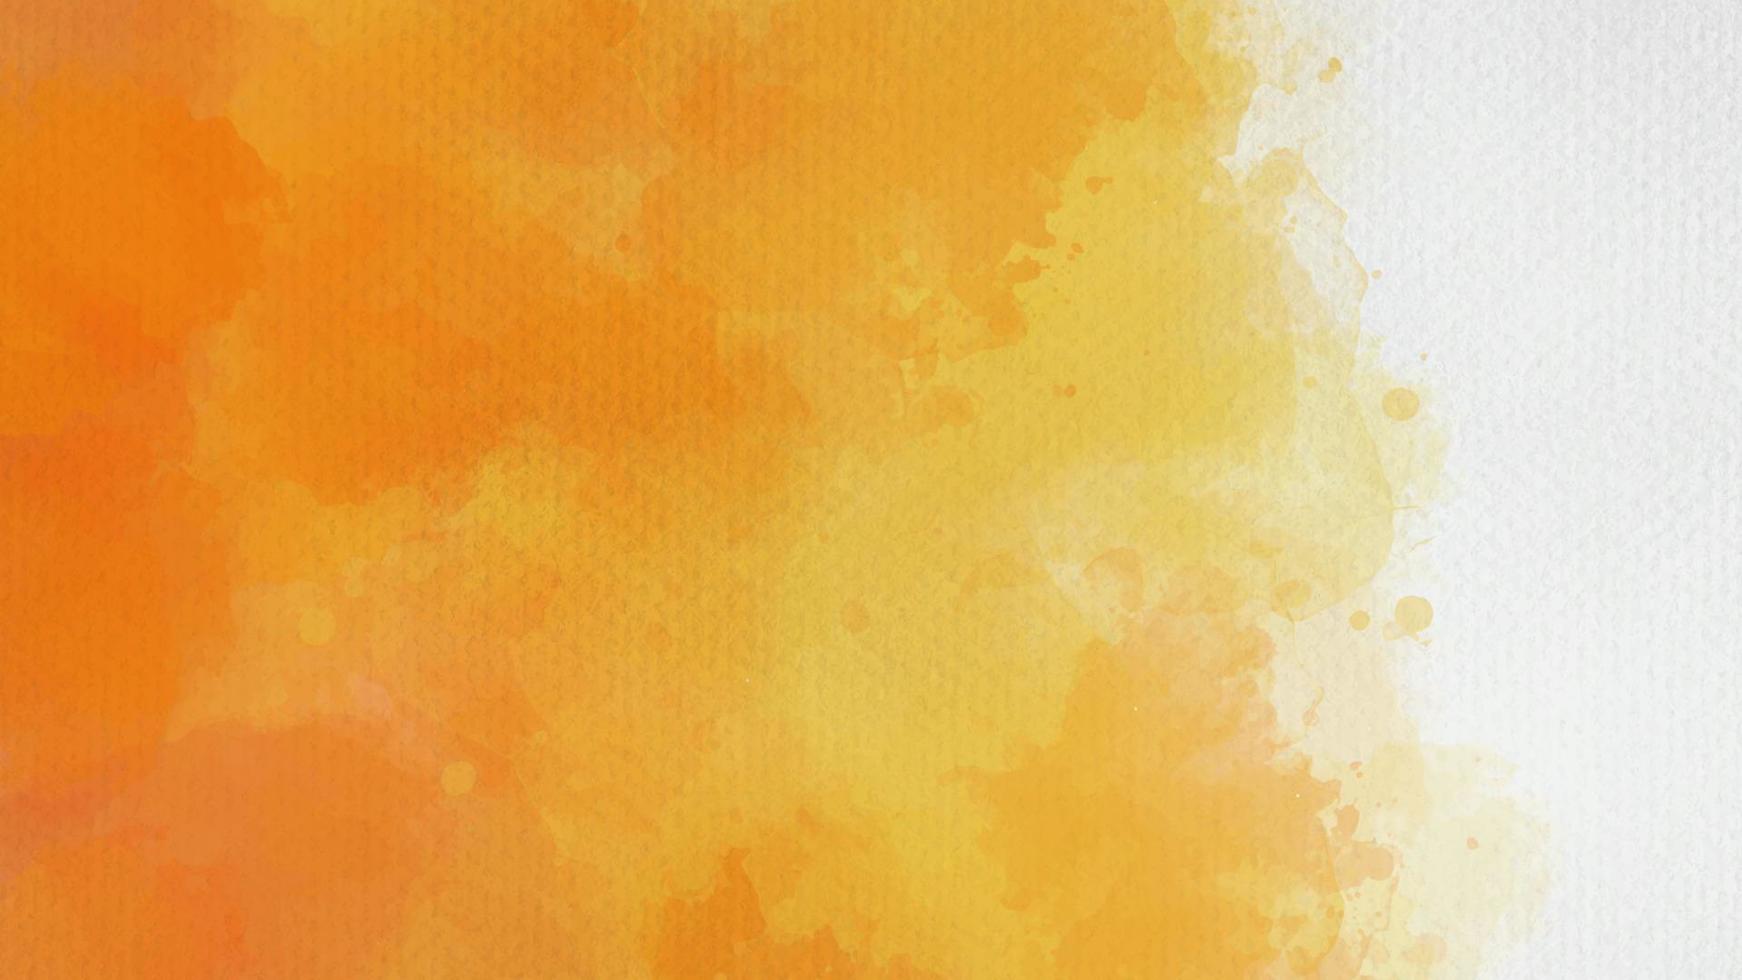 pintado a mano de color naranja y amarillo con textura de acuarela de fondo abstracto vector